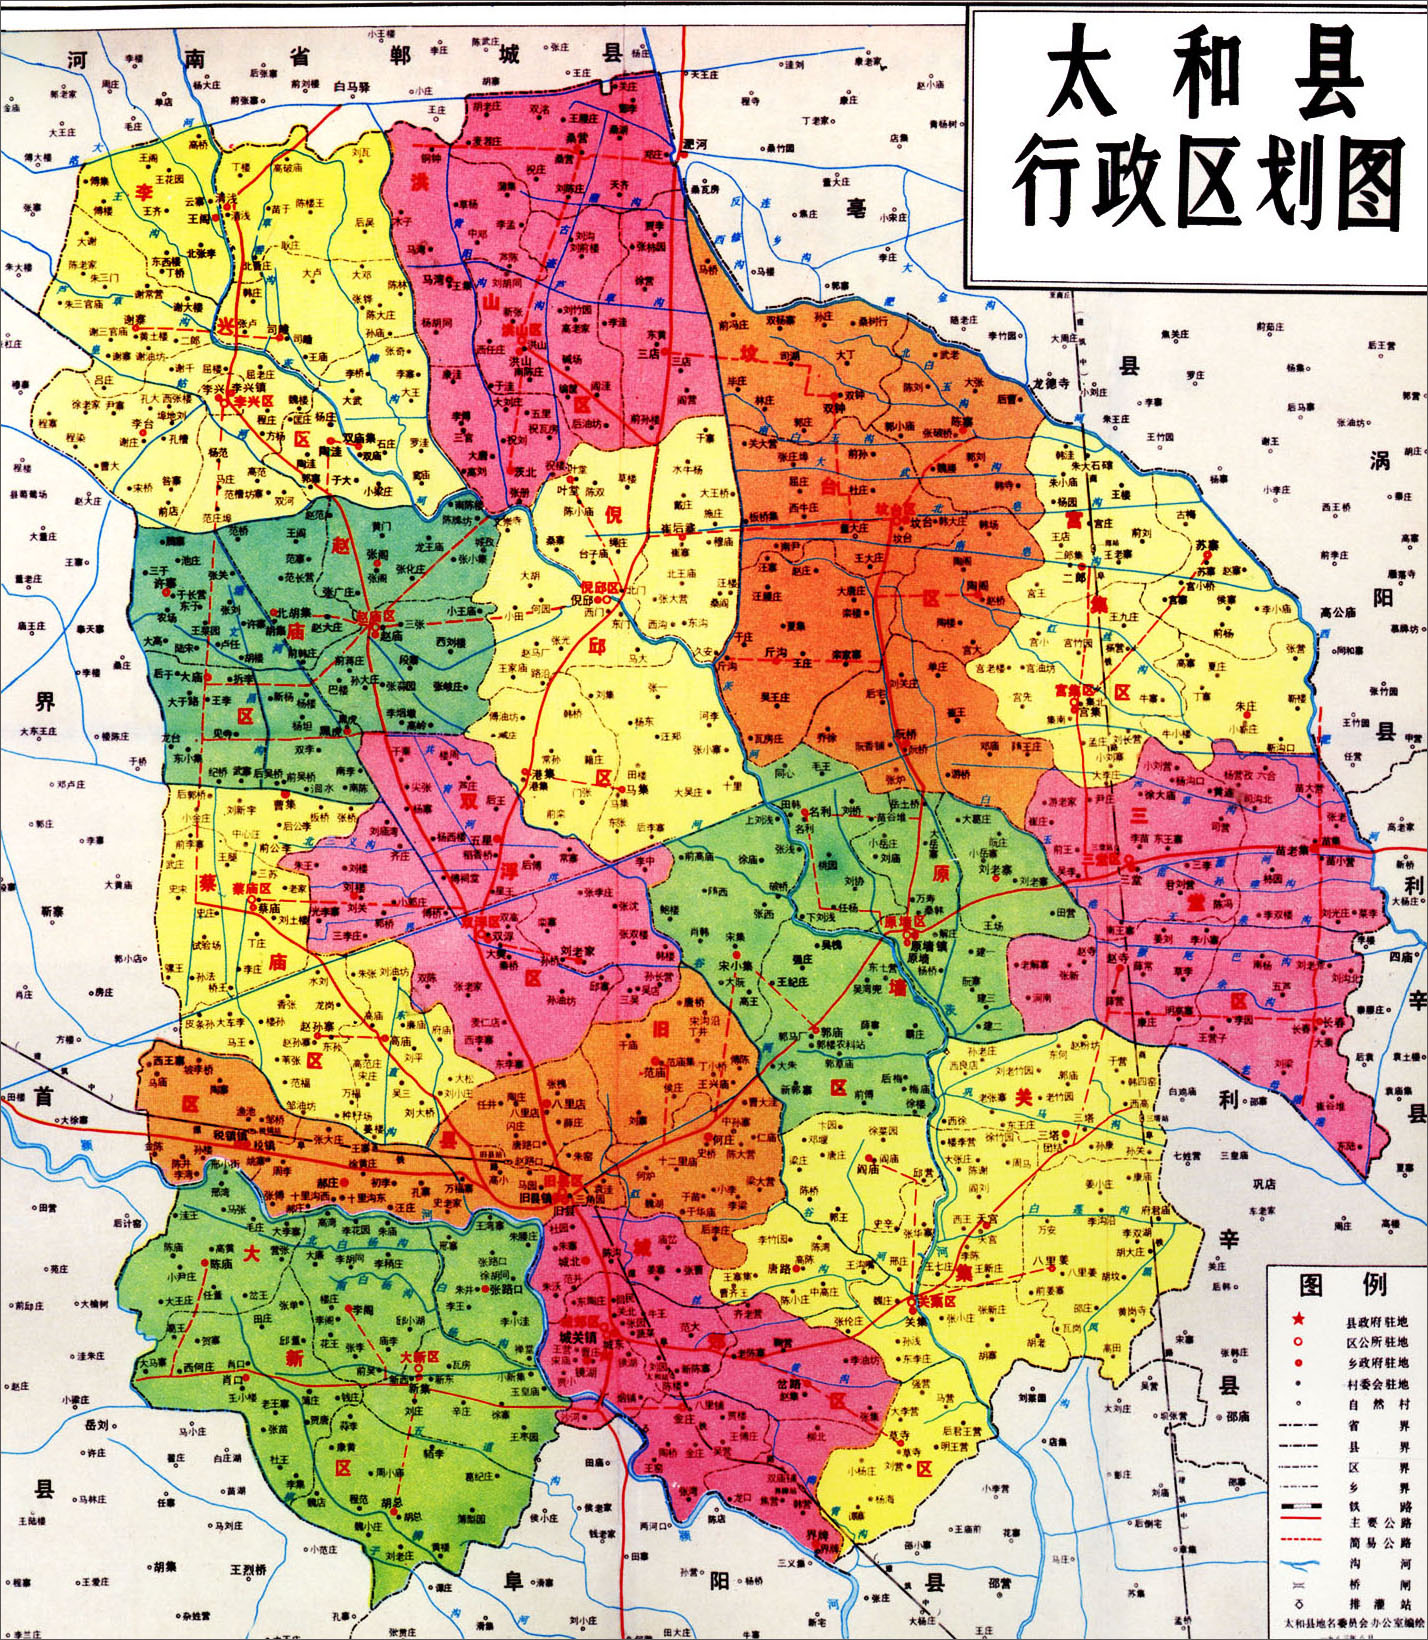 中国地图 安徽 阜阳市 >> 太和县行政区划图  相关链接: 合肥市  芜湖图片